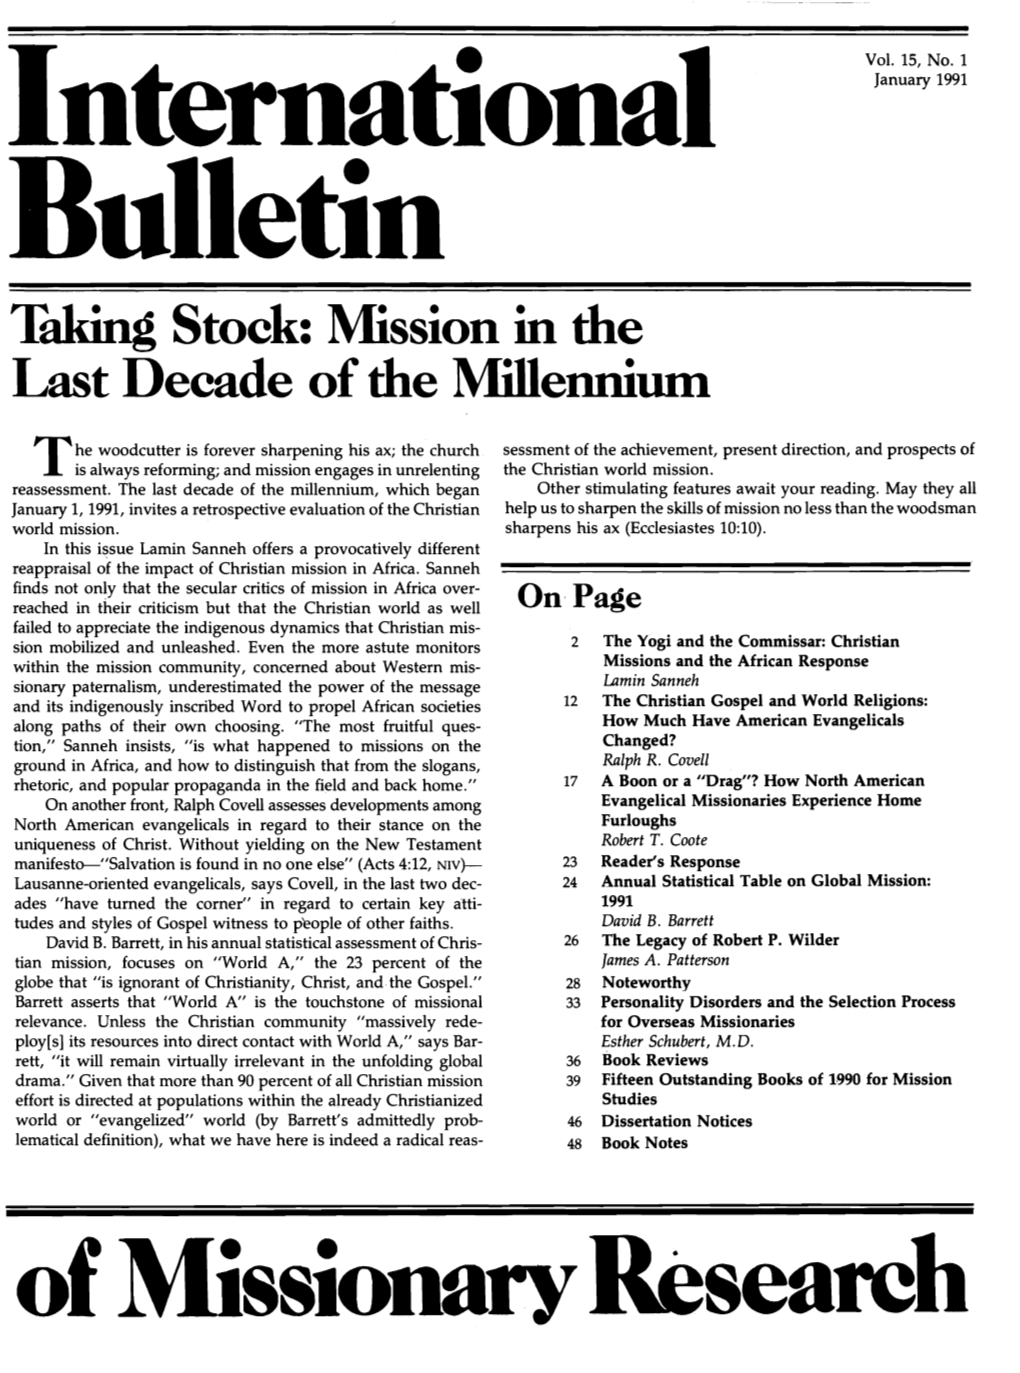 FULL ISSUE (48 Pp., 2.4 MB PDF)